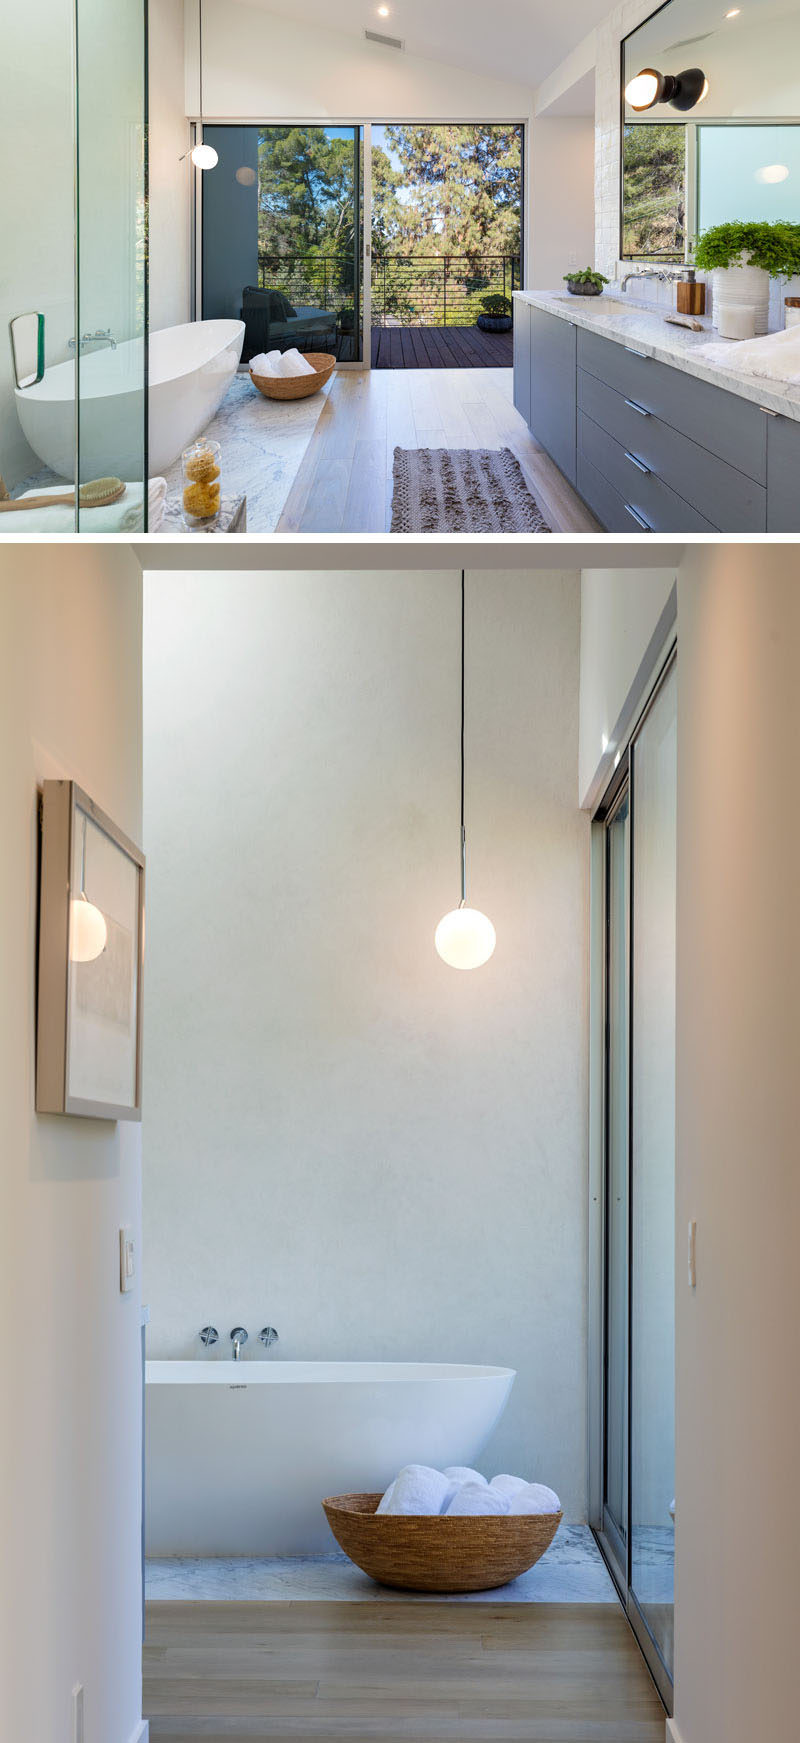 В этой современной ванной комнате есть собственный балкон, а из отдельно стоящей ванной открывается вид на деревья. # Современная ванная # Балкон # Дизайн интерьера